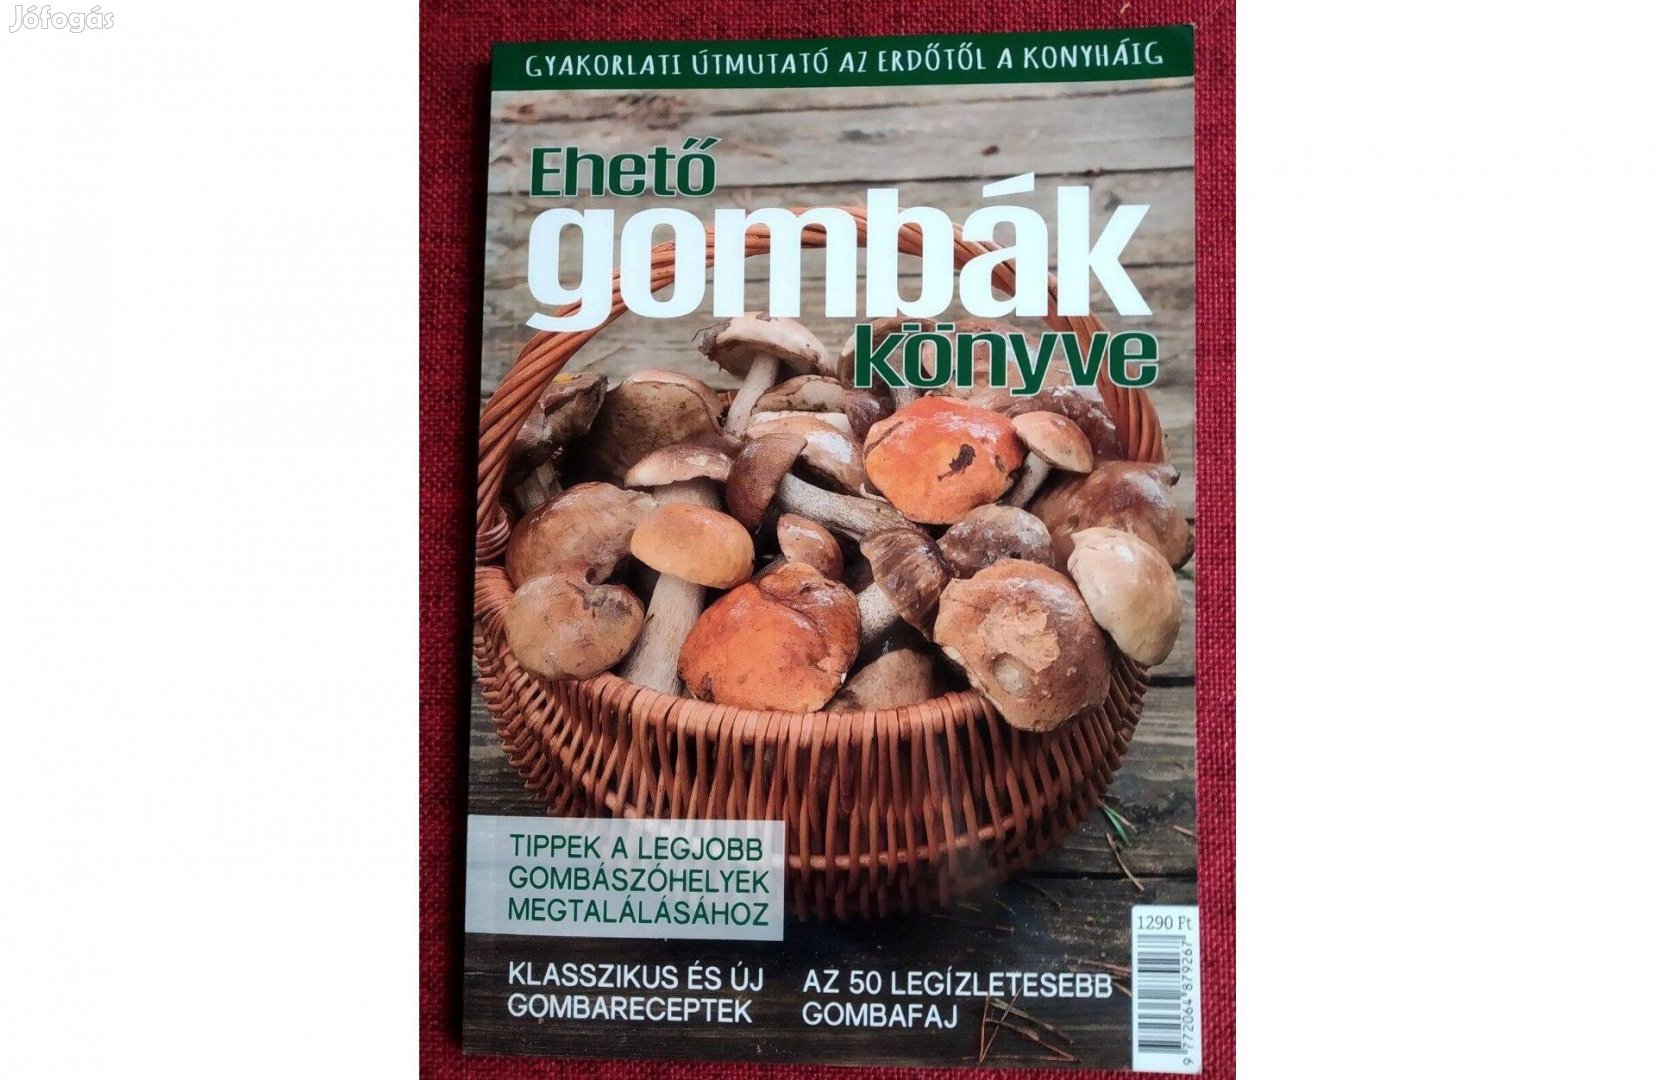 Ehető gombák könyve Kossuth Kiadó, 2018